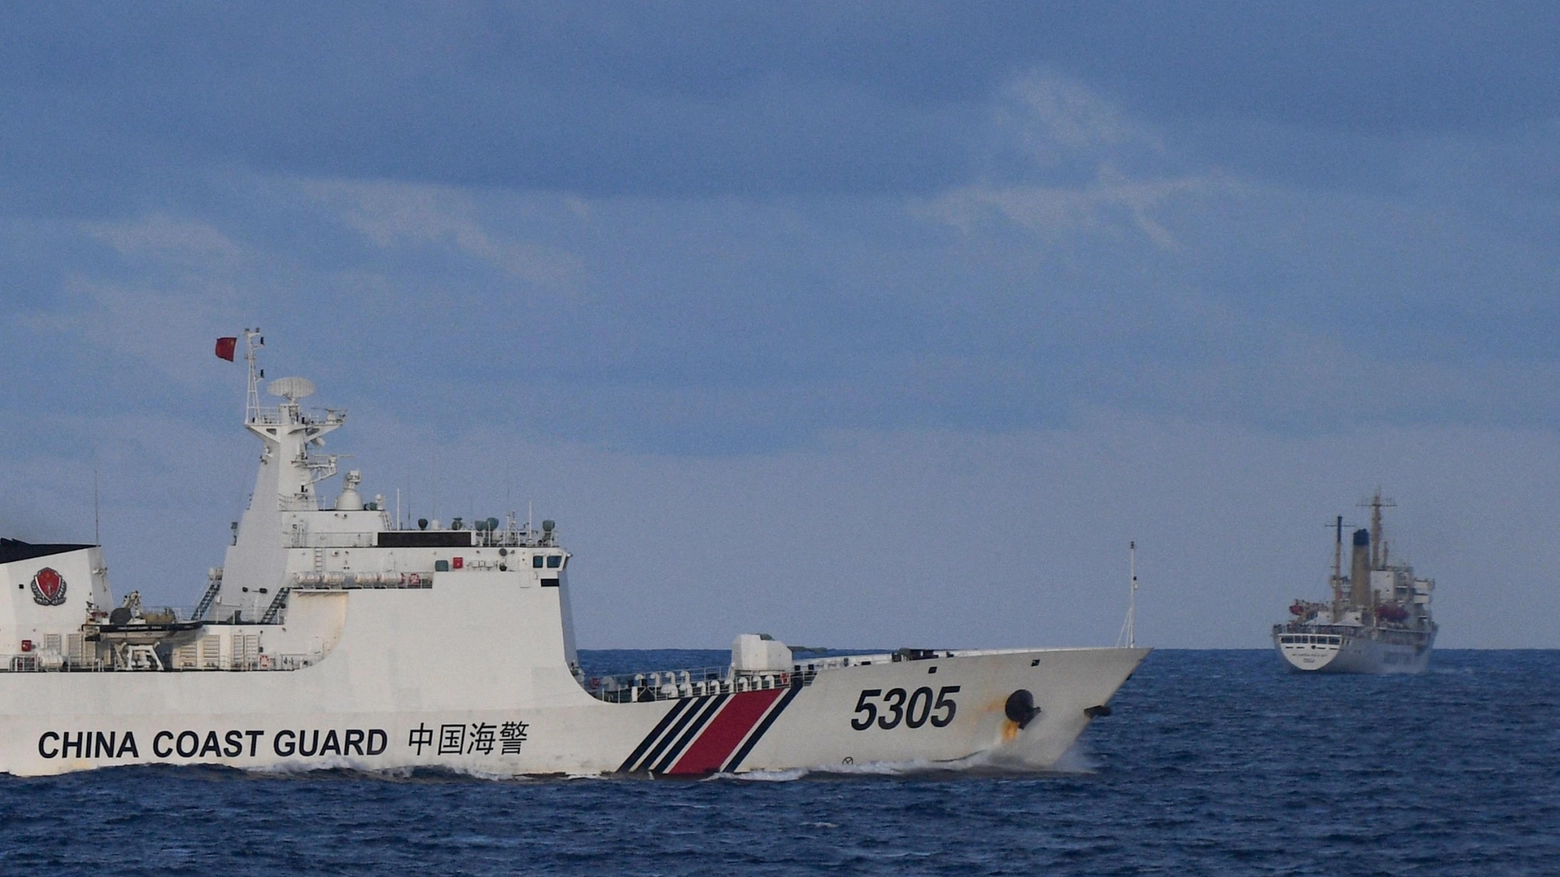 La Guardia costiera cinese vicino a una nave delle Filippine (Ansa)